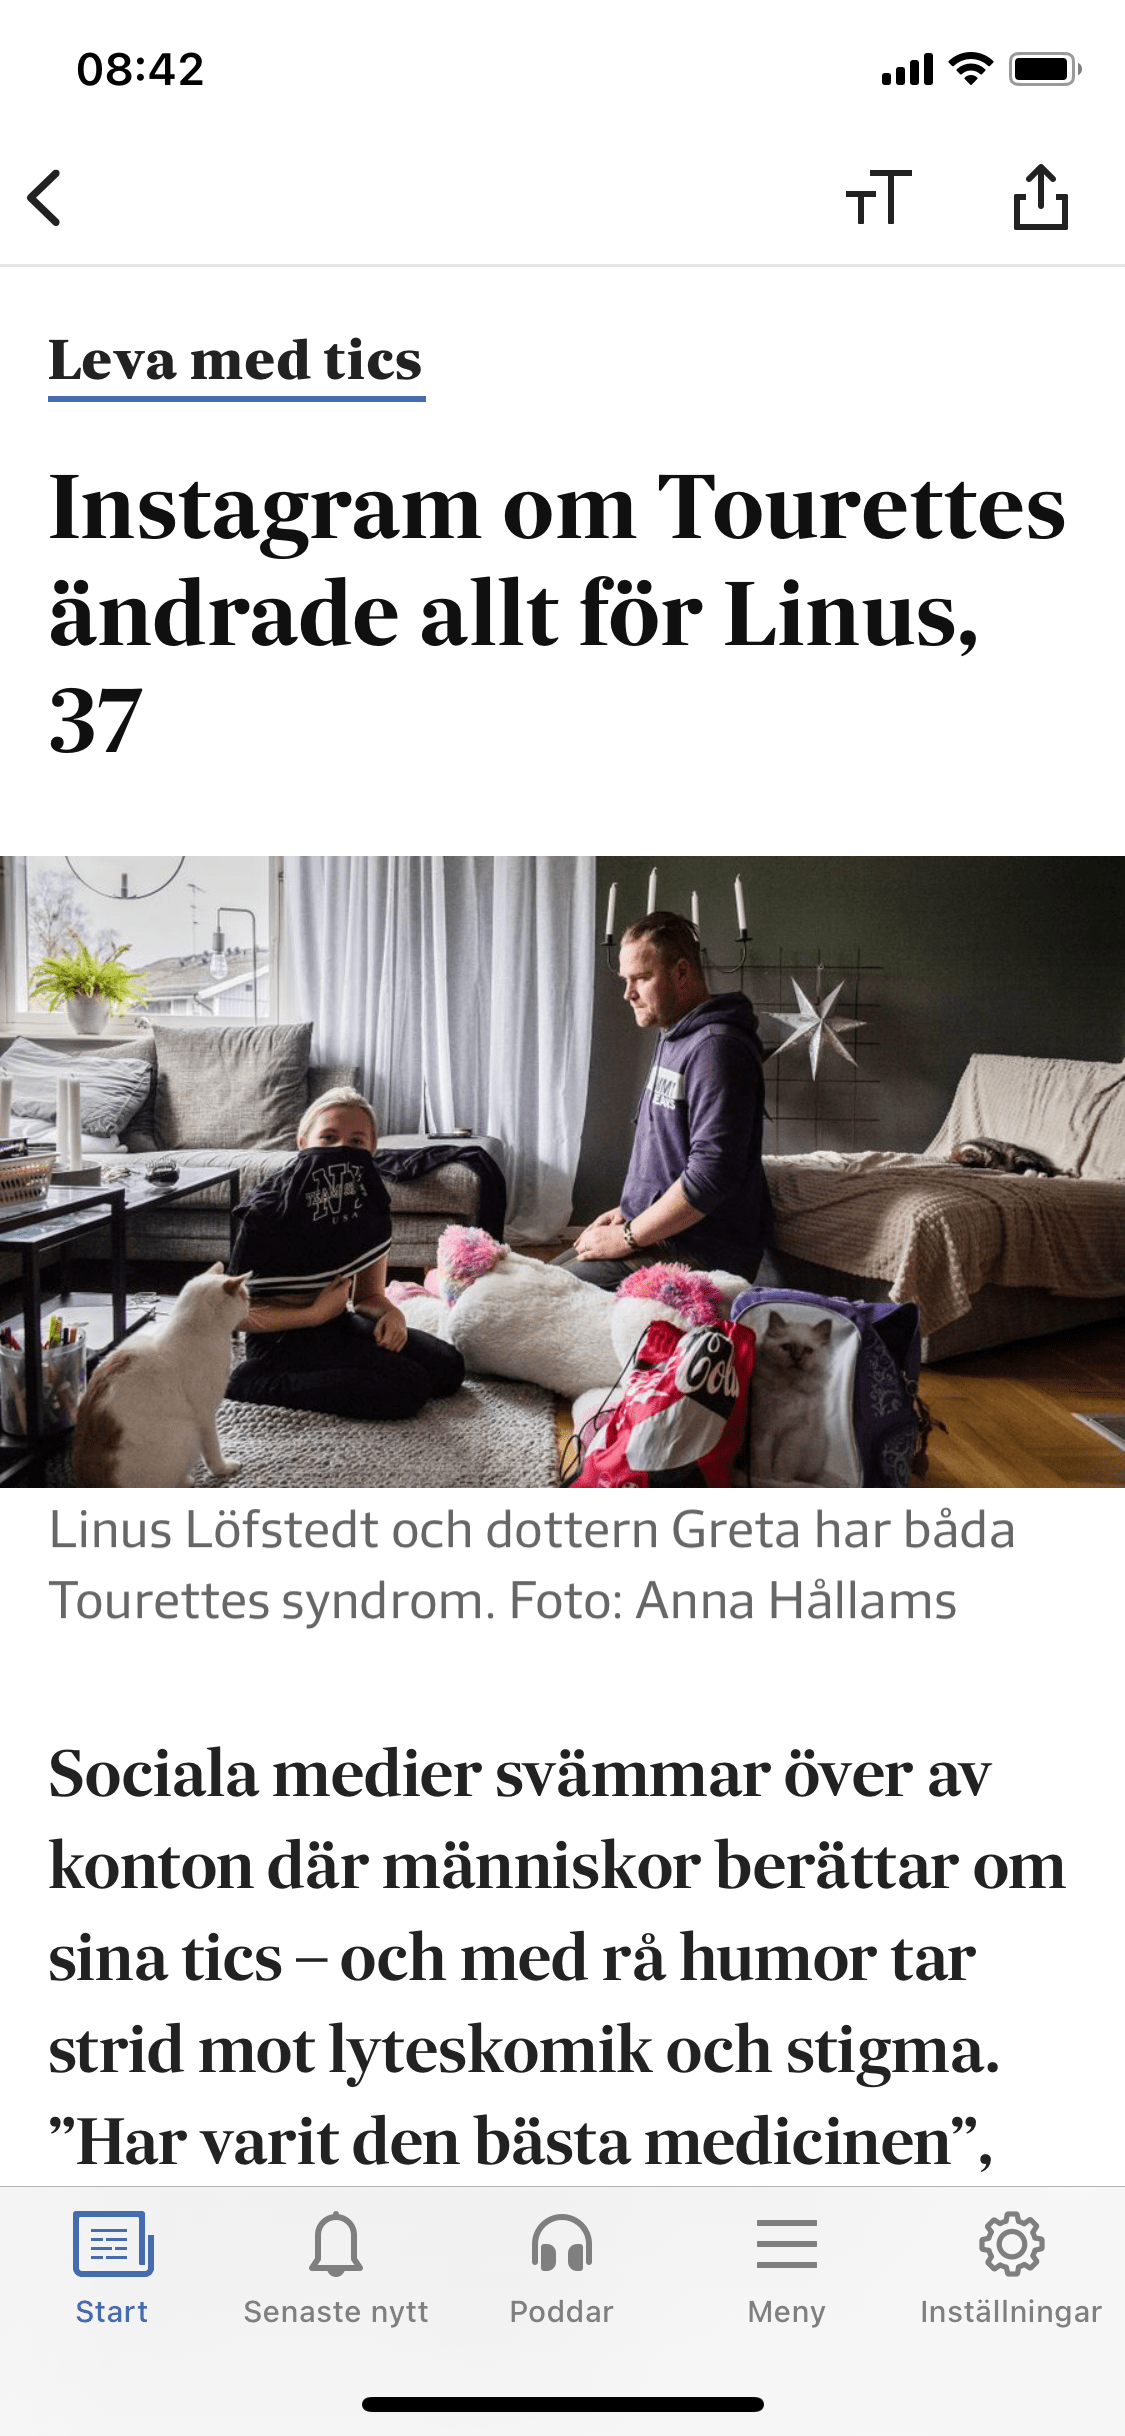 idagsidan svd livet Svenska Dagbladet TICS tourettes